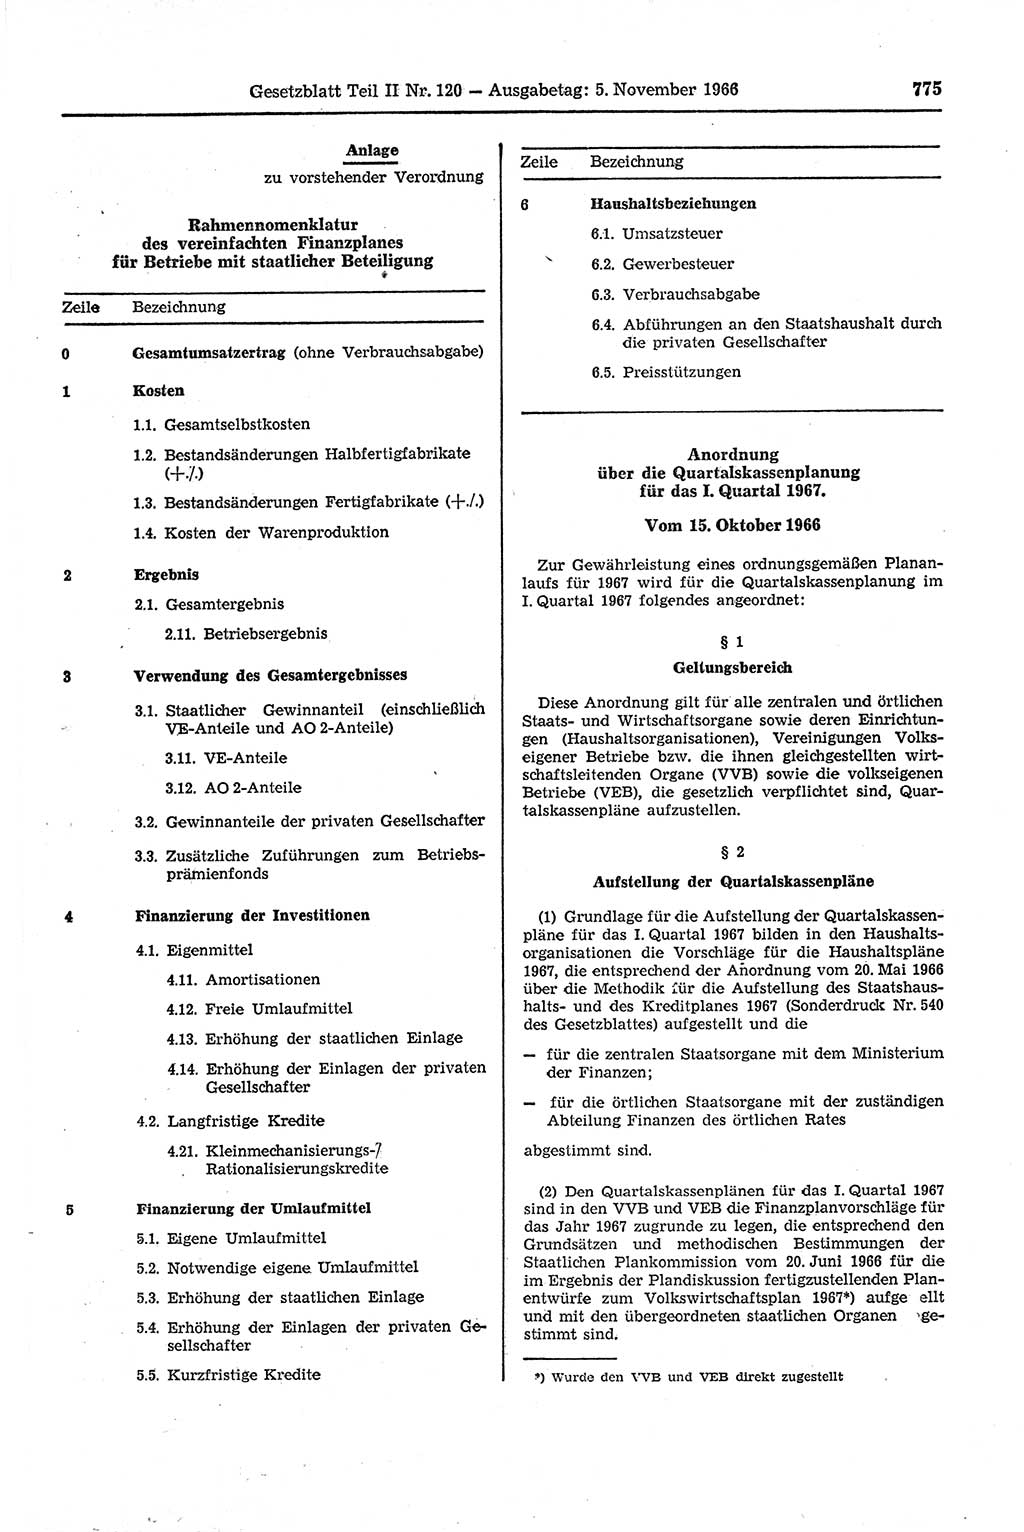 Gesetzblatt (GBl.) der Deutschen Demokratischen Republik (DDR) Teil ⅠⅠ 1966, Seite 775 (GBl. DDR ⅠⅠ 1966, S. 775)